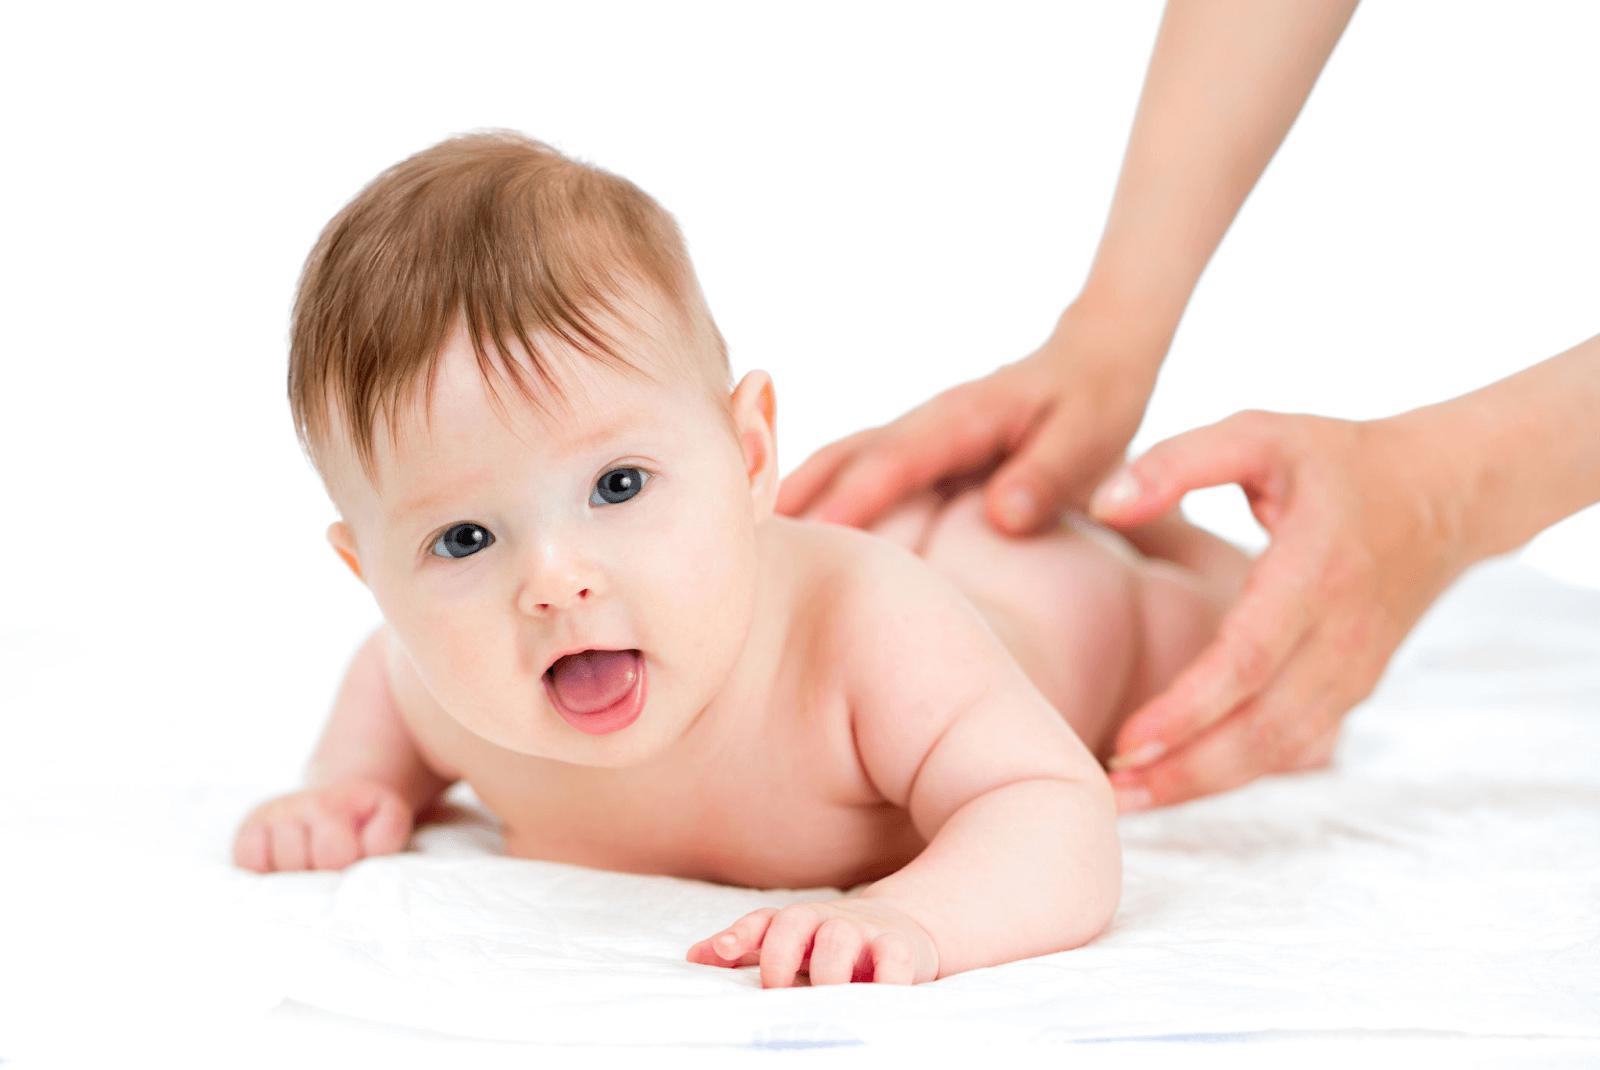 Hướng dẫn cách chữa nấc cho trẻ sơ sinh an toàn, hiệu quả